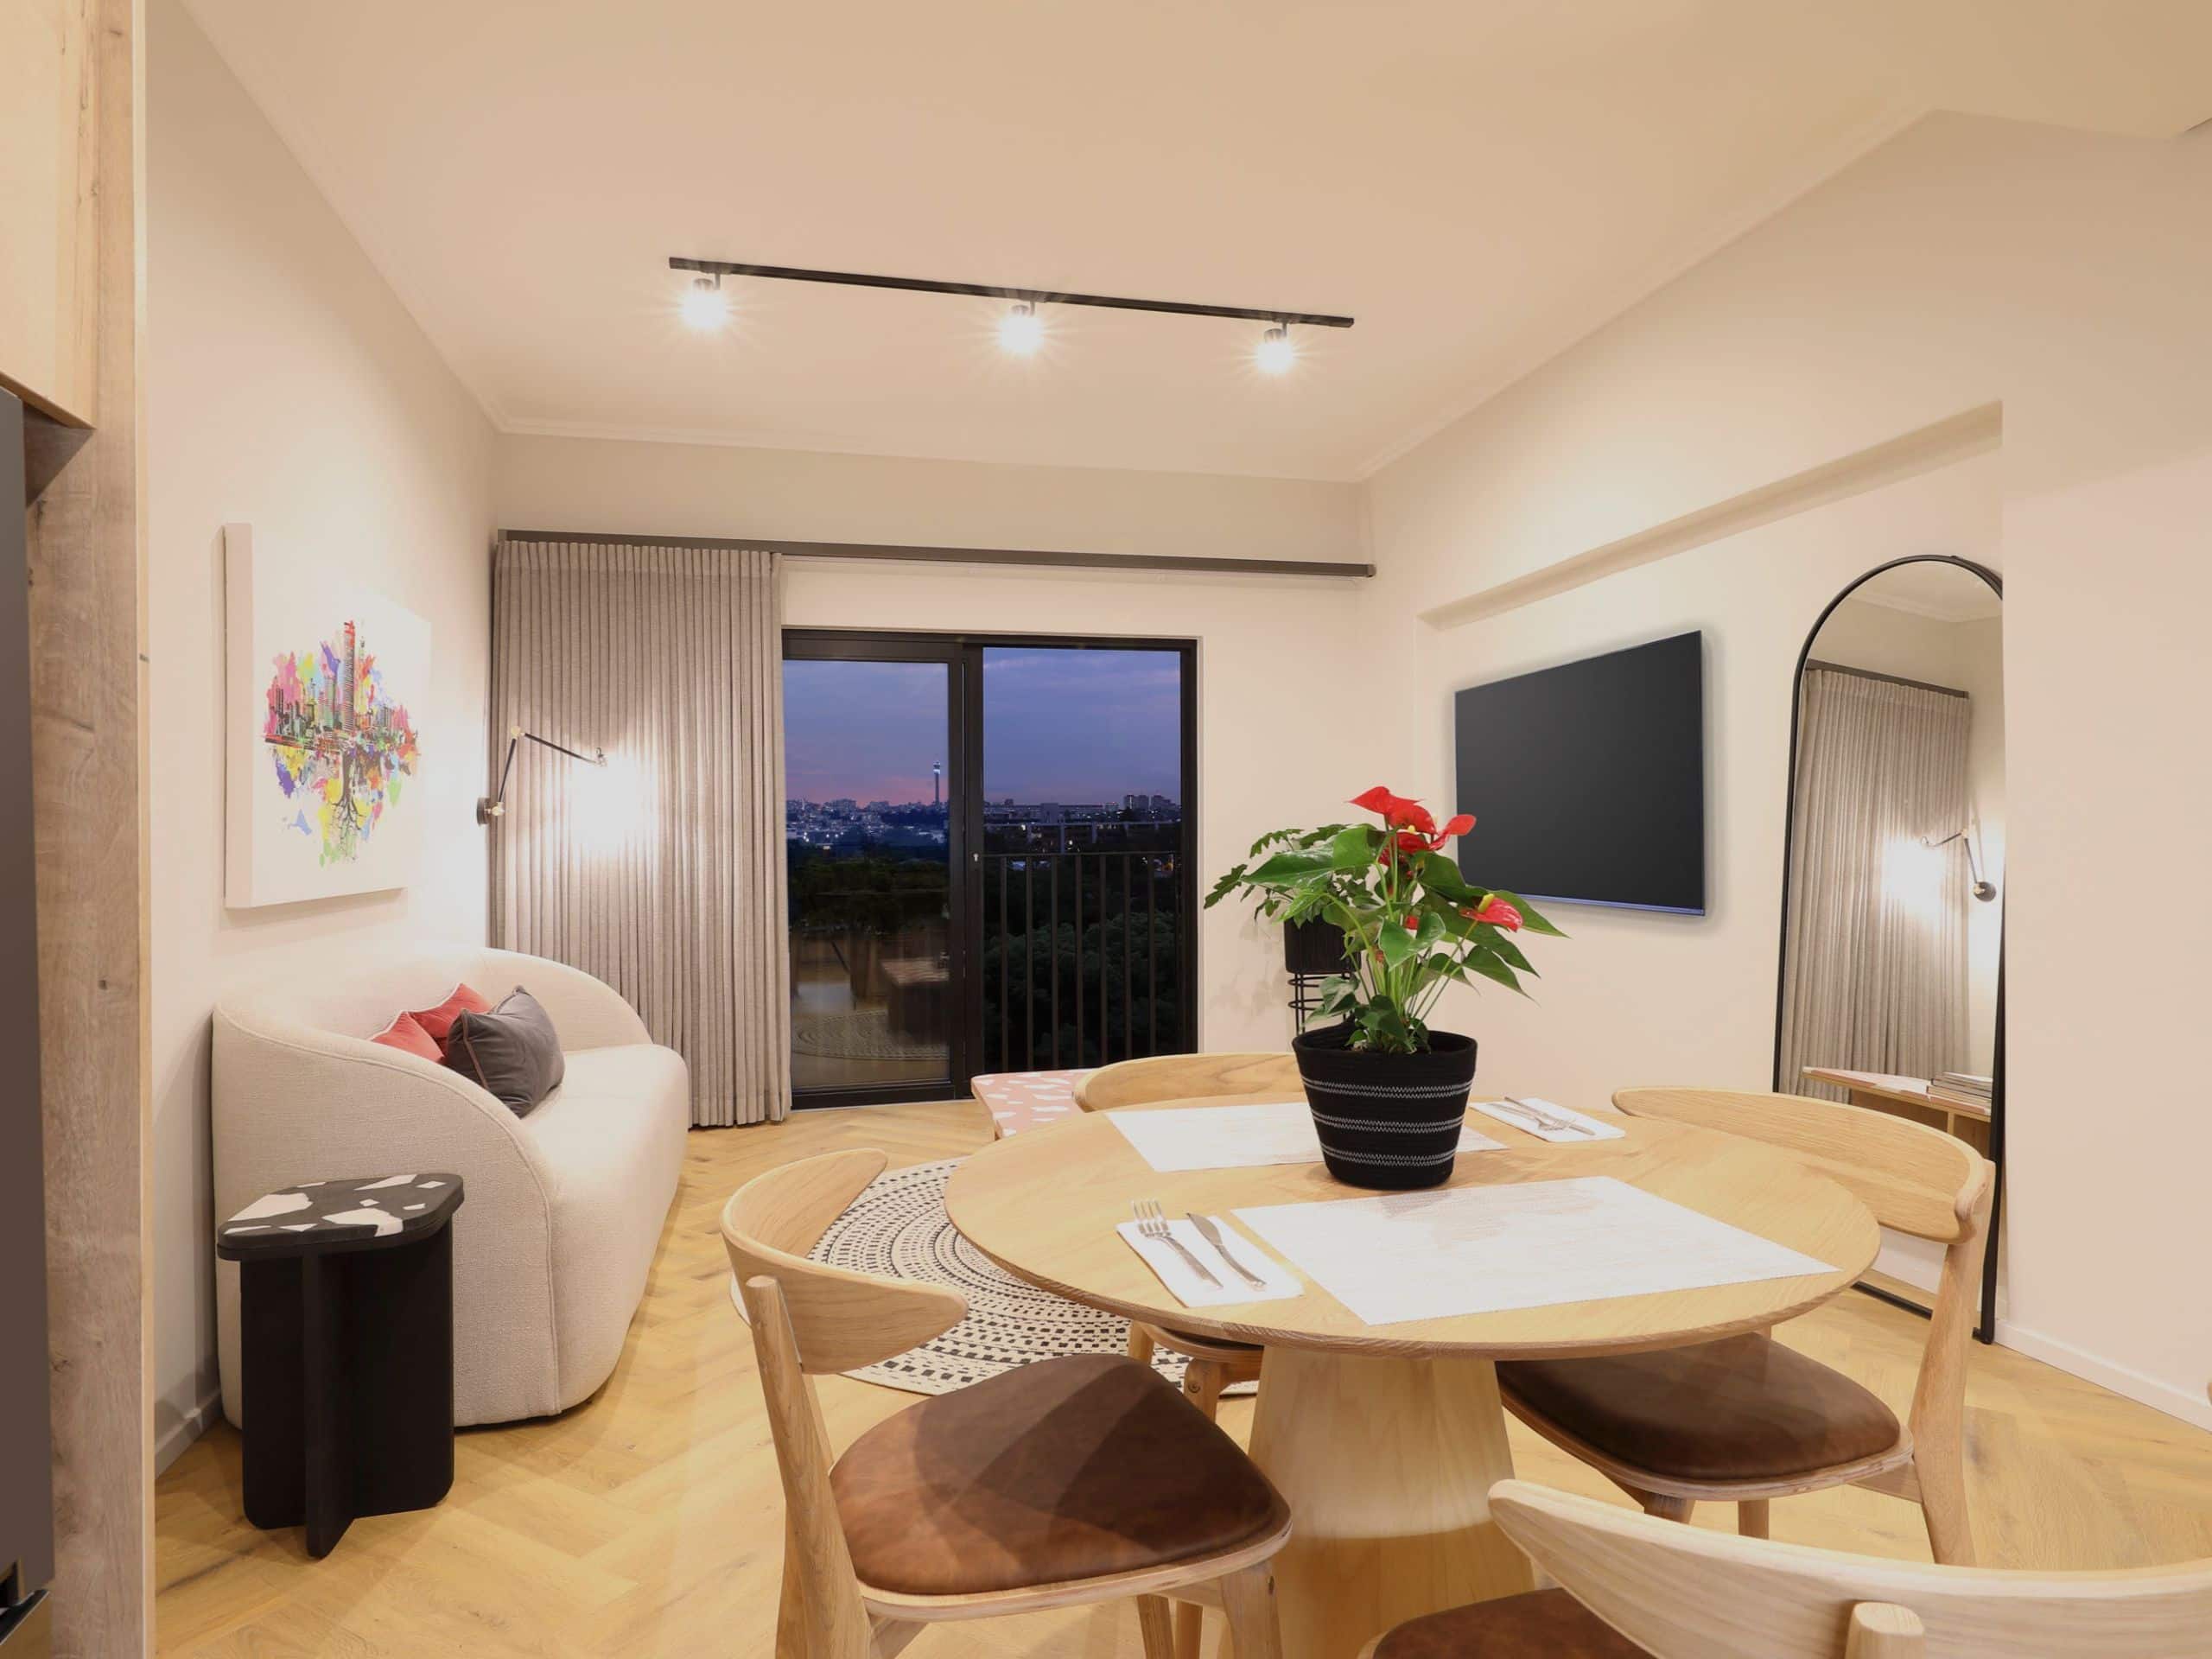 ハイアット ハウス ヨハネスブルク ローズバンク | ローズバンクの快適でモダンな客室とアパートメント